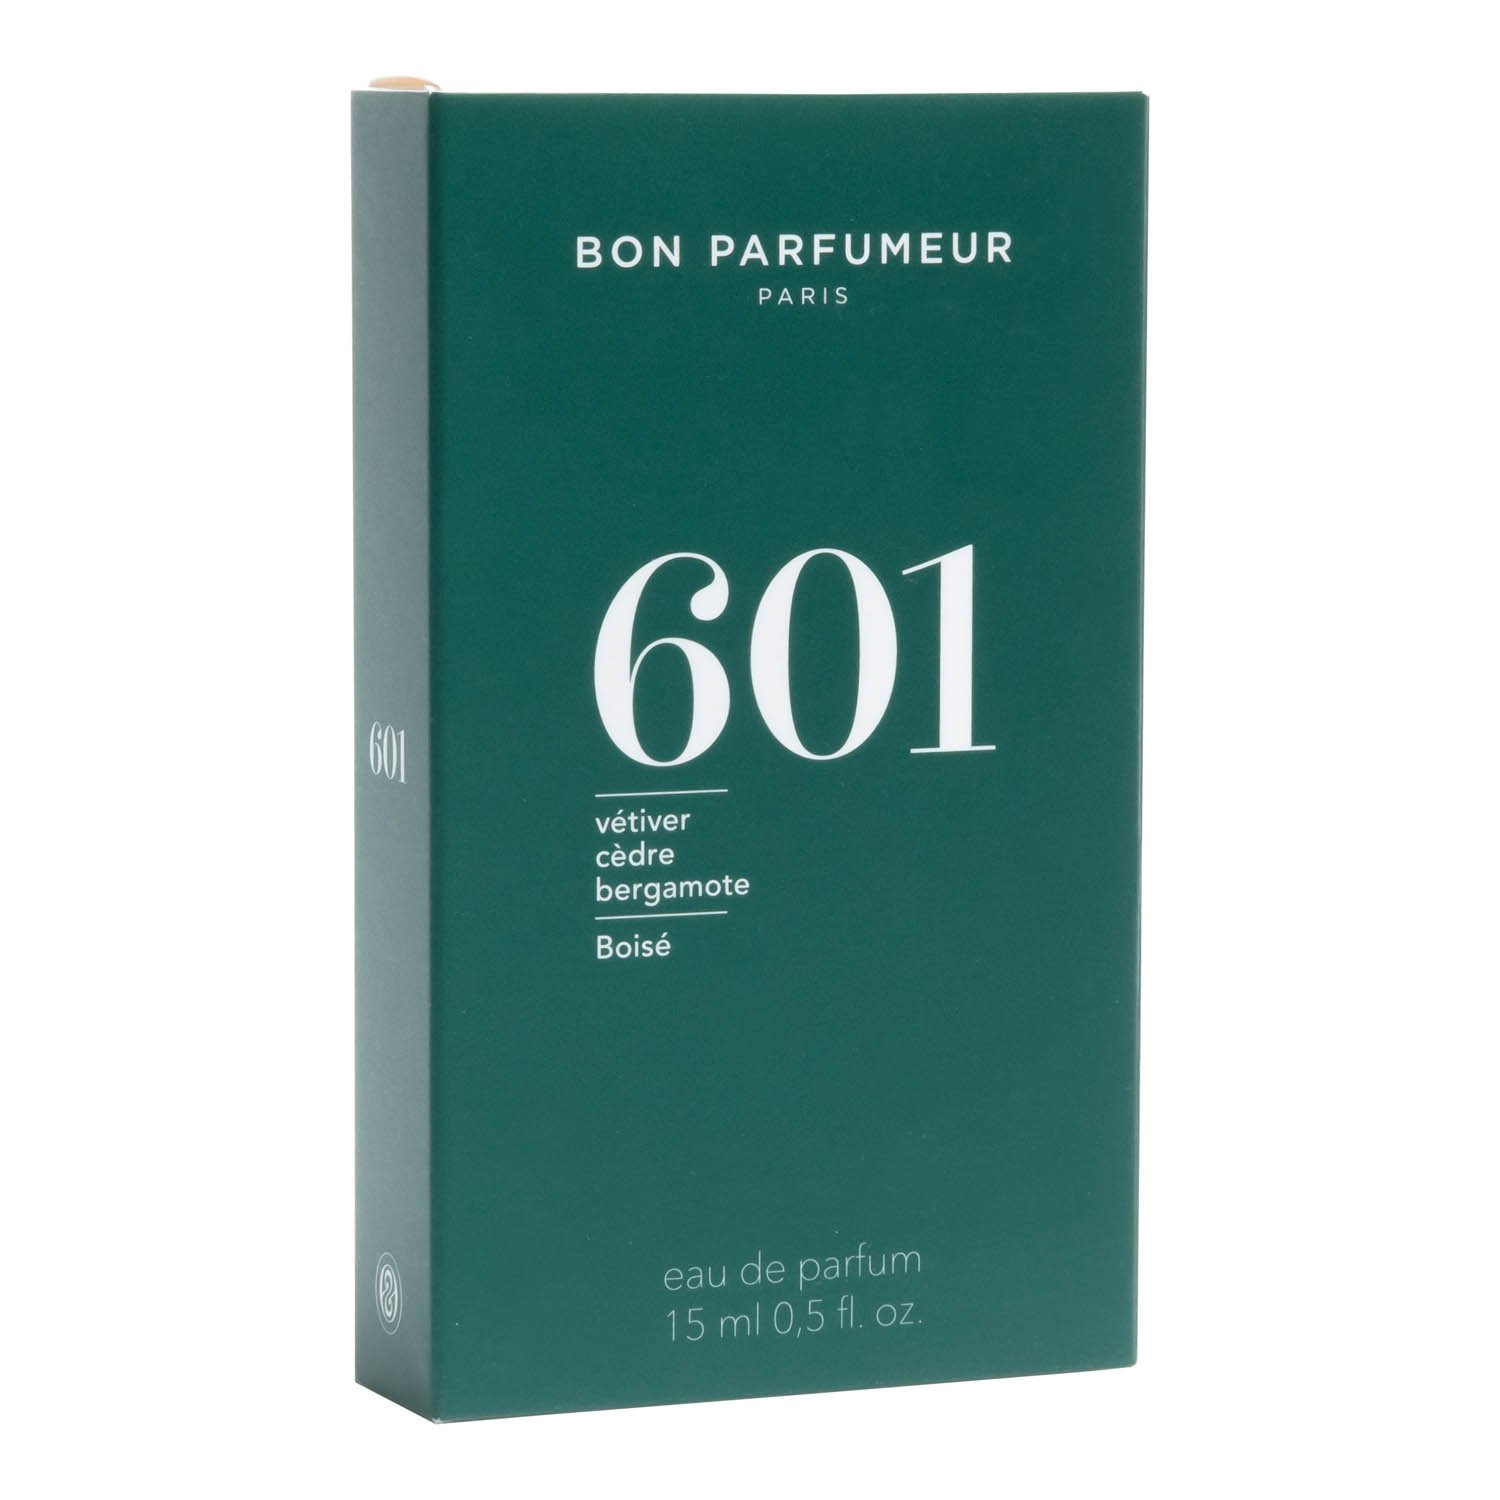 Bon Parfumeur Eau de Parfum 601 15 ml